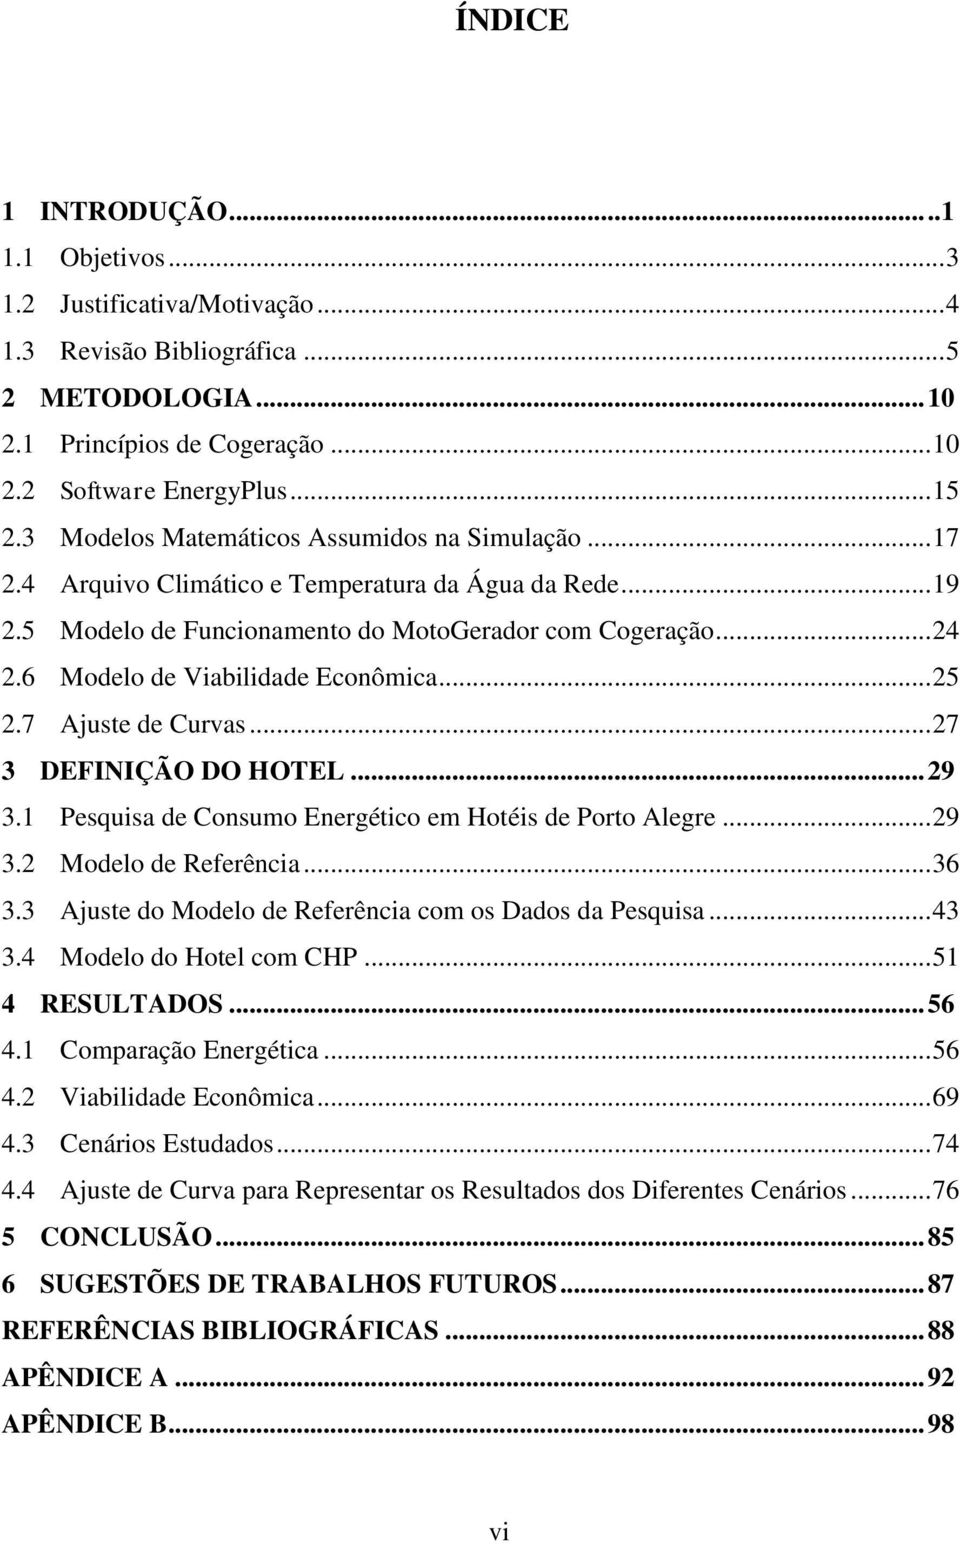 6 Modelo de Viabilidade Econômica... 25 2.7 Ajuste de Curvas... 27 3 DEFINIÇÃO DO HOTEL... 29 3.1 Pesquisa de Consumo Energético em Hotéis de Porto Alegre... 29 3.2 Modelo de Referência... 36 3.